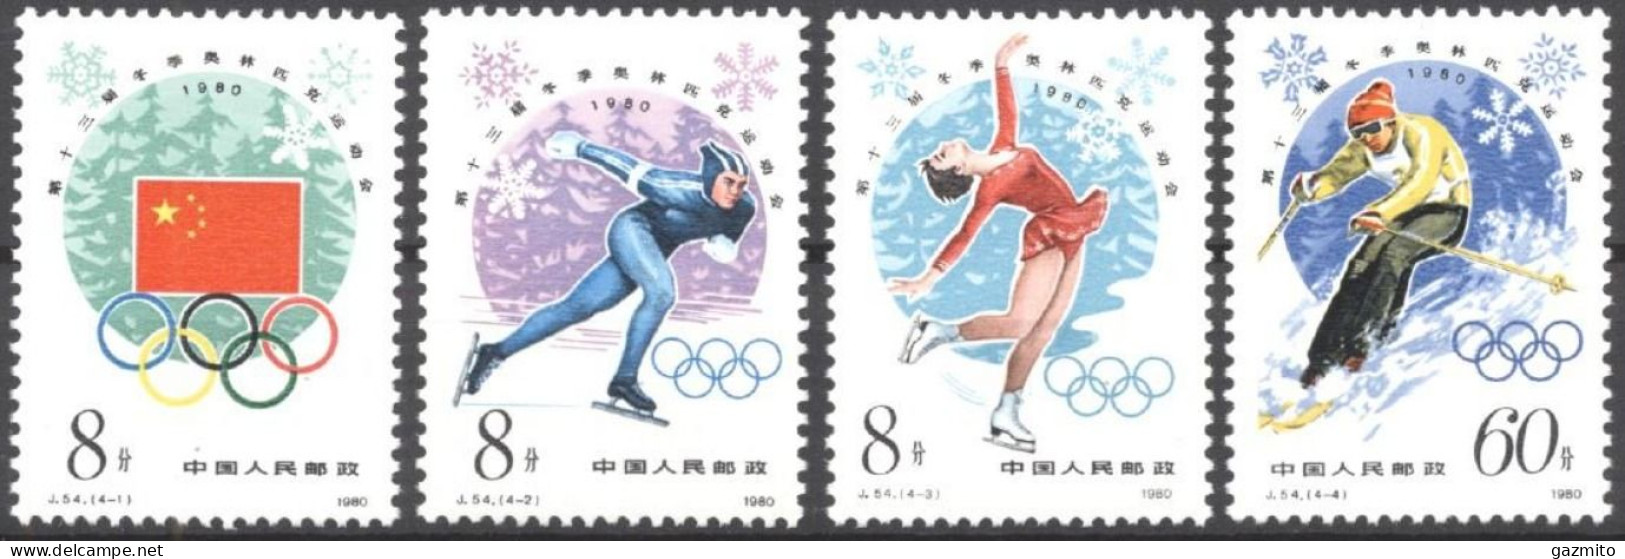 China 1980, Winter Olympic Games, Lake Placid, Skating, Skiing, 4val - Patinage Artistique